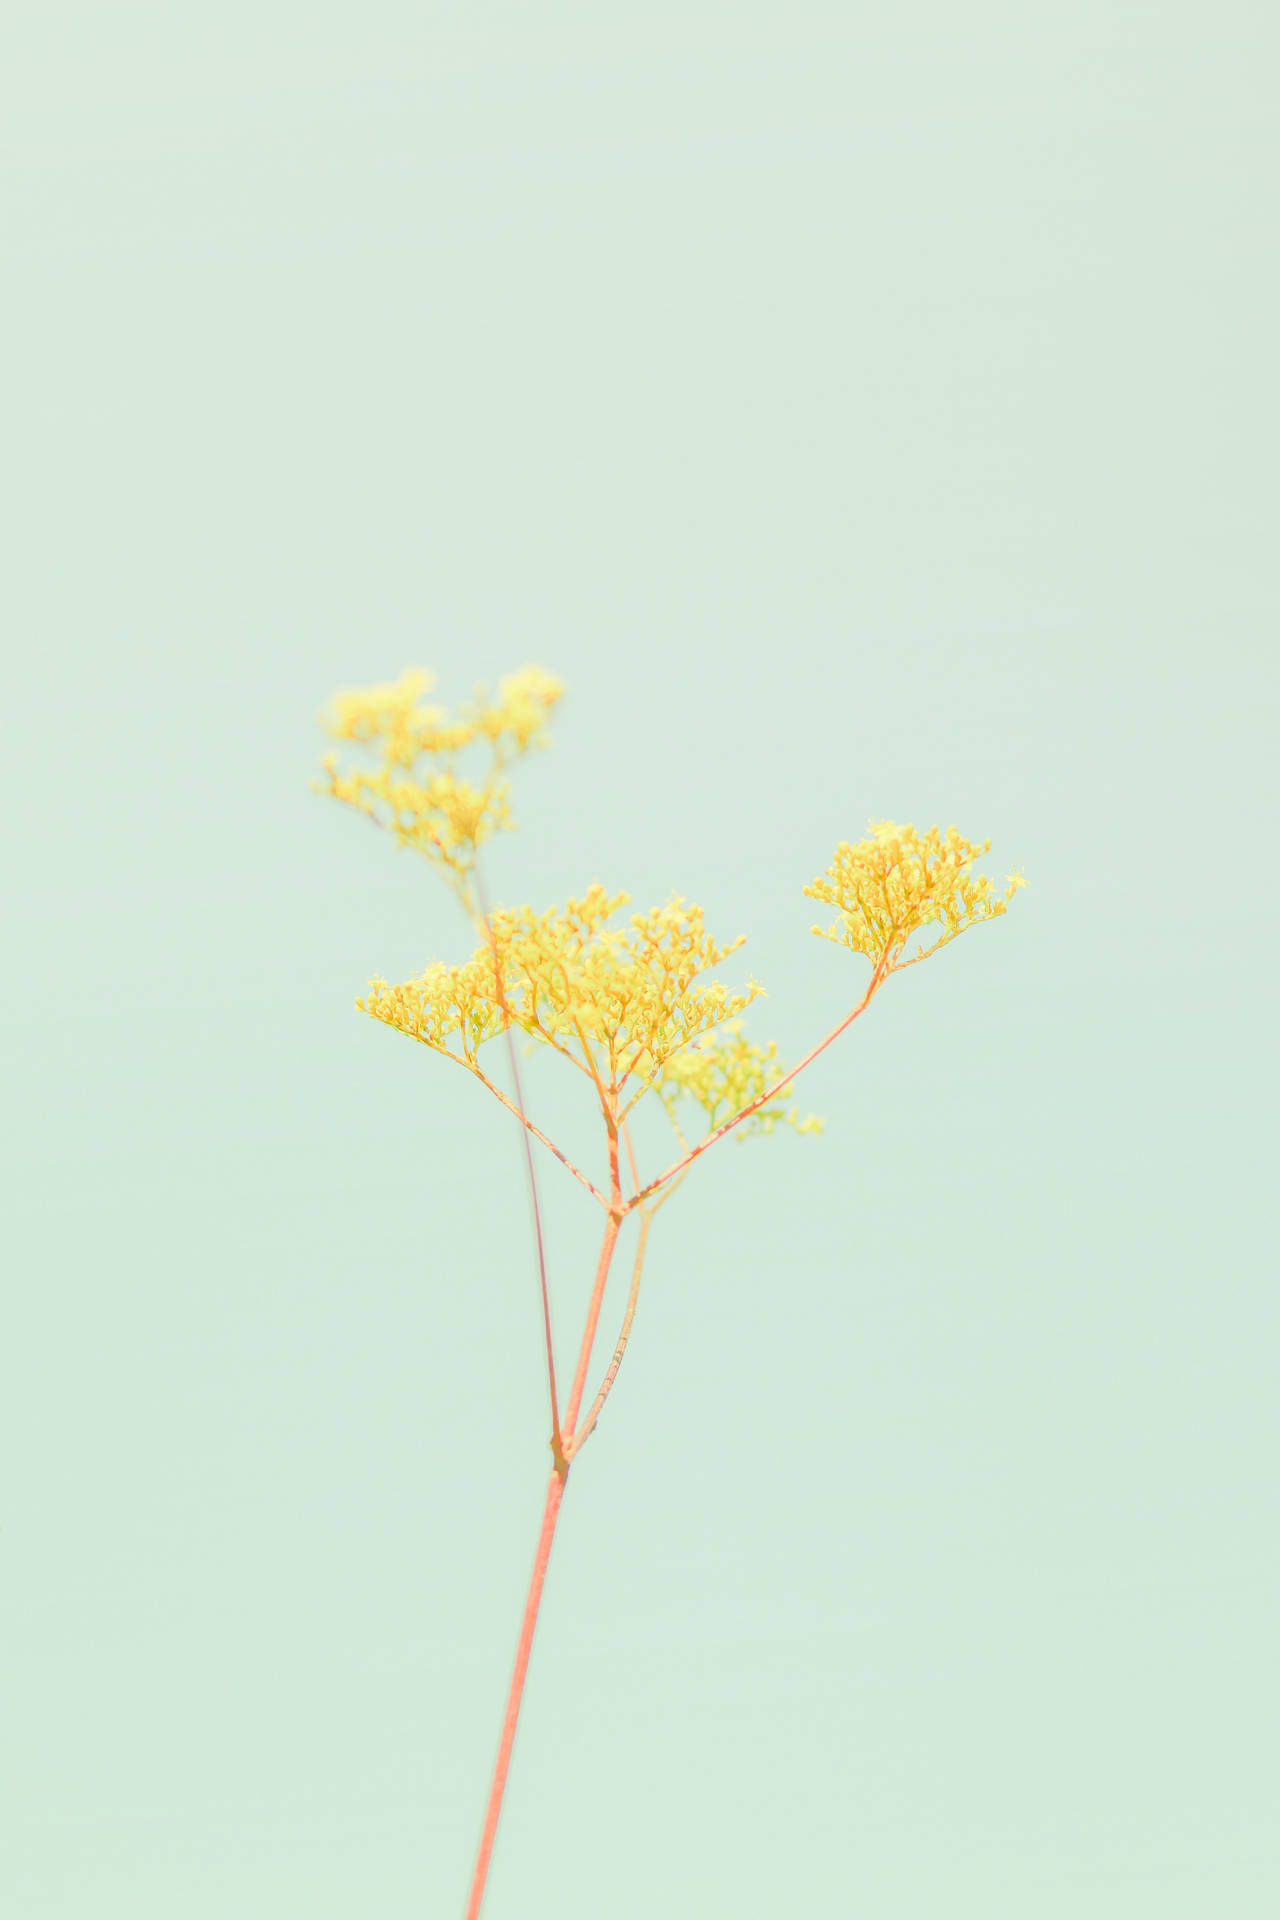 Wallpaperde Iphone En Tonos Pastel Amarillo Y Verde Con Flores Fondo de pantalla